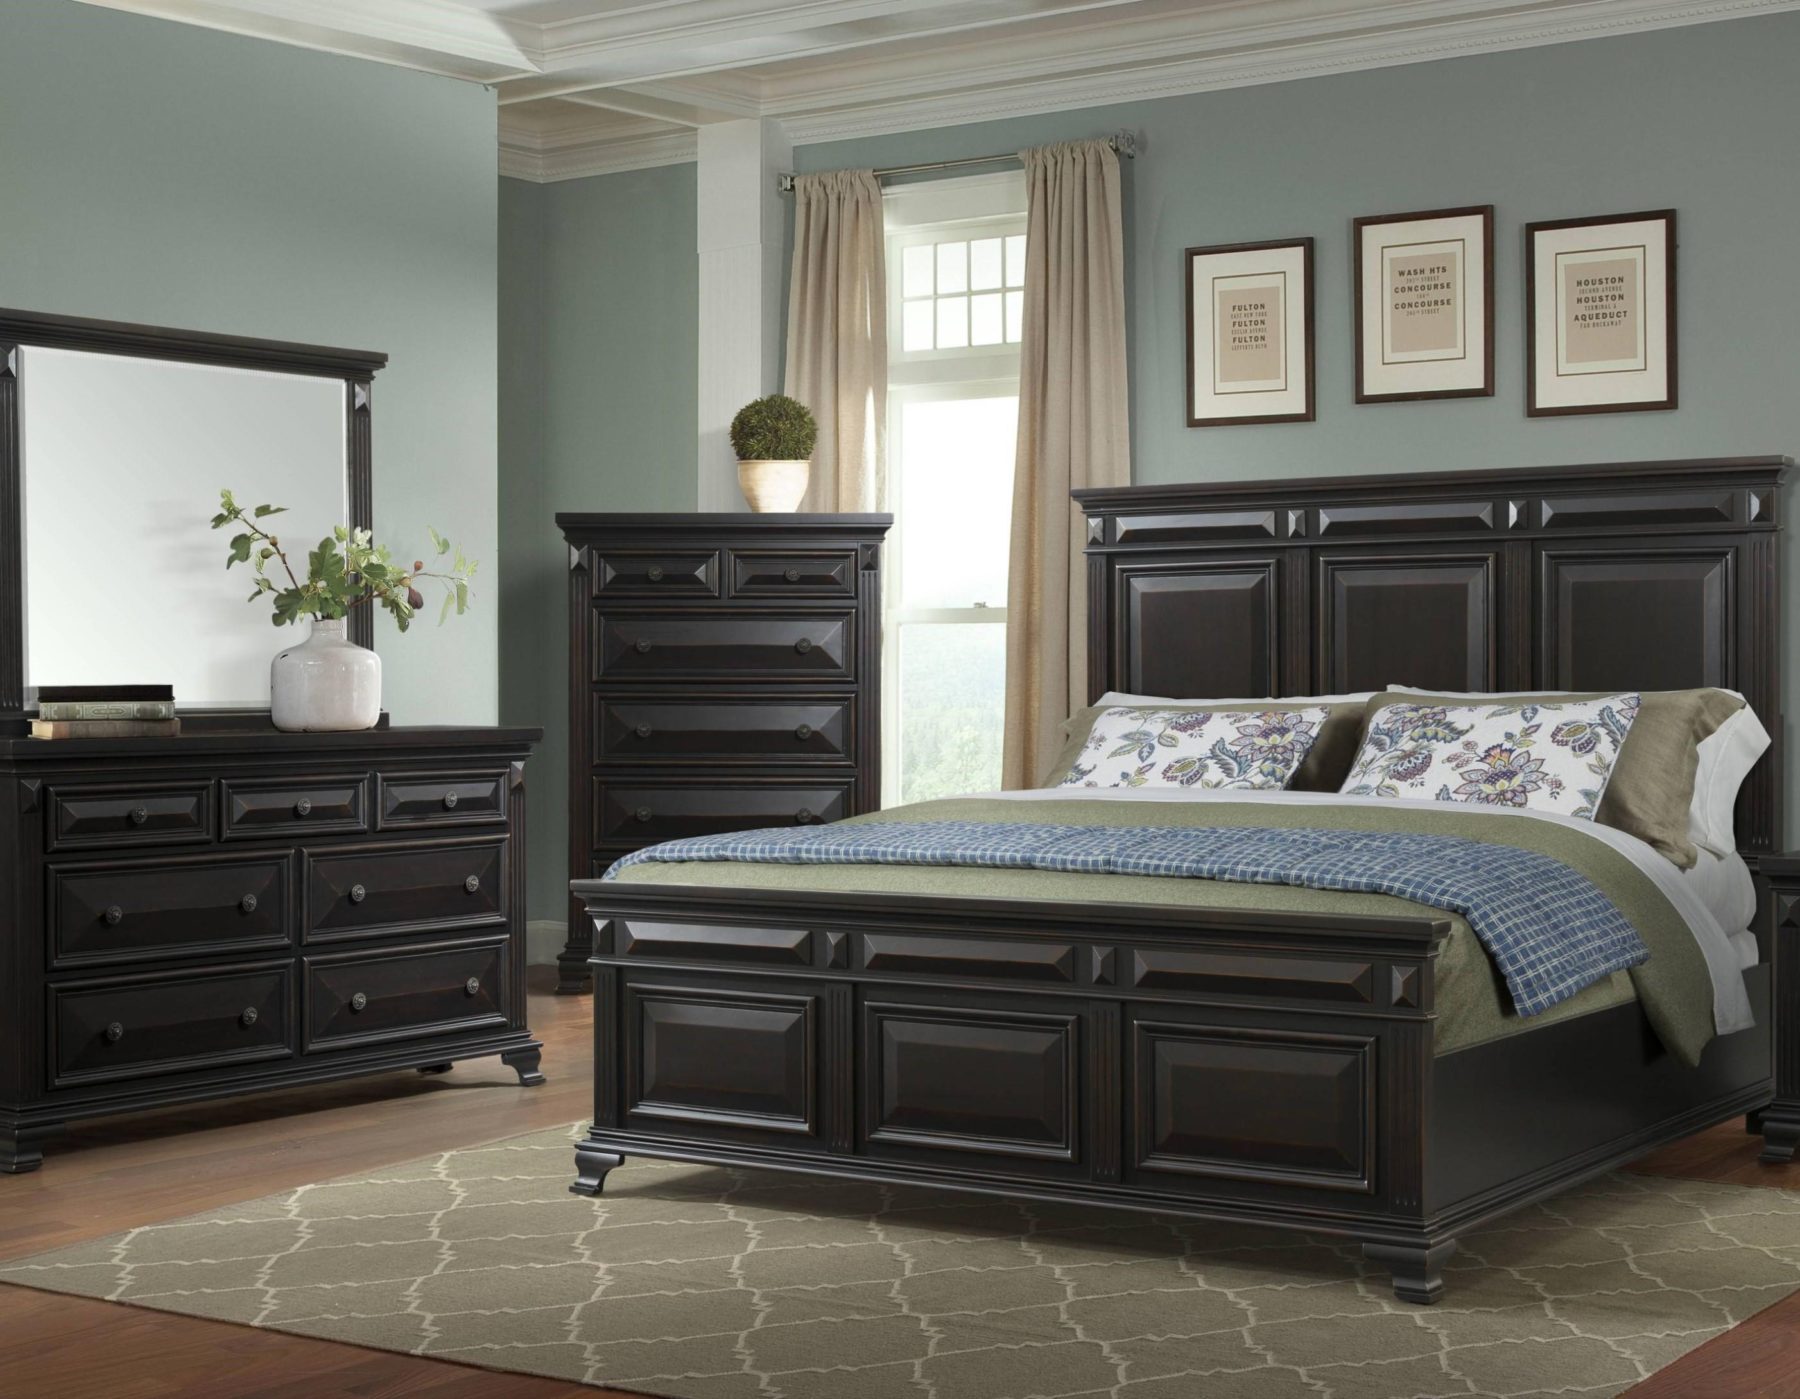 bedroom furniture set in black